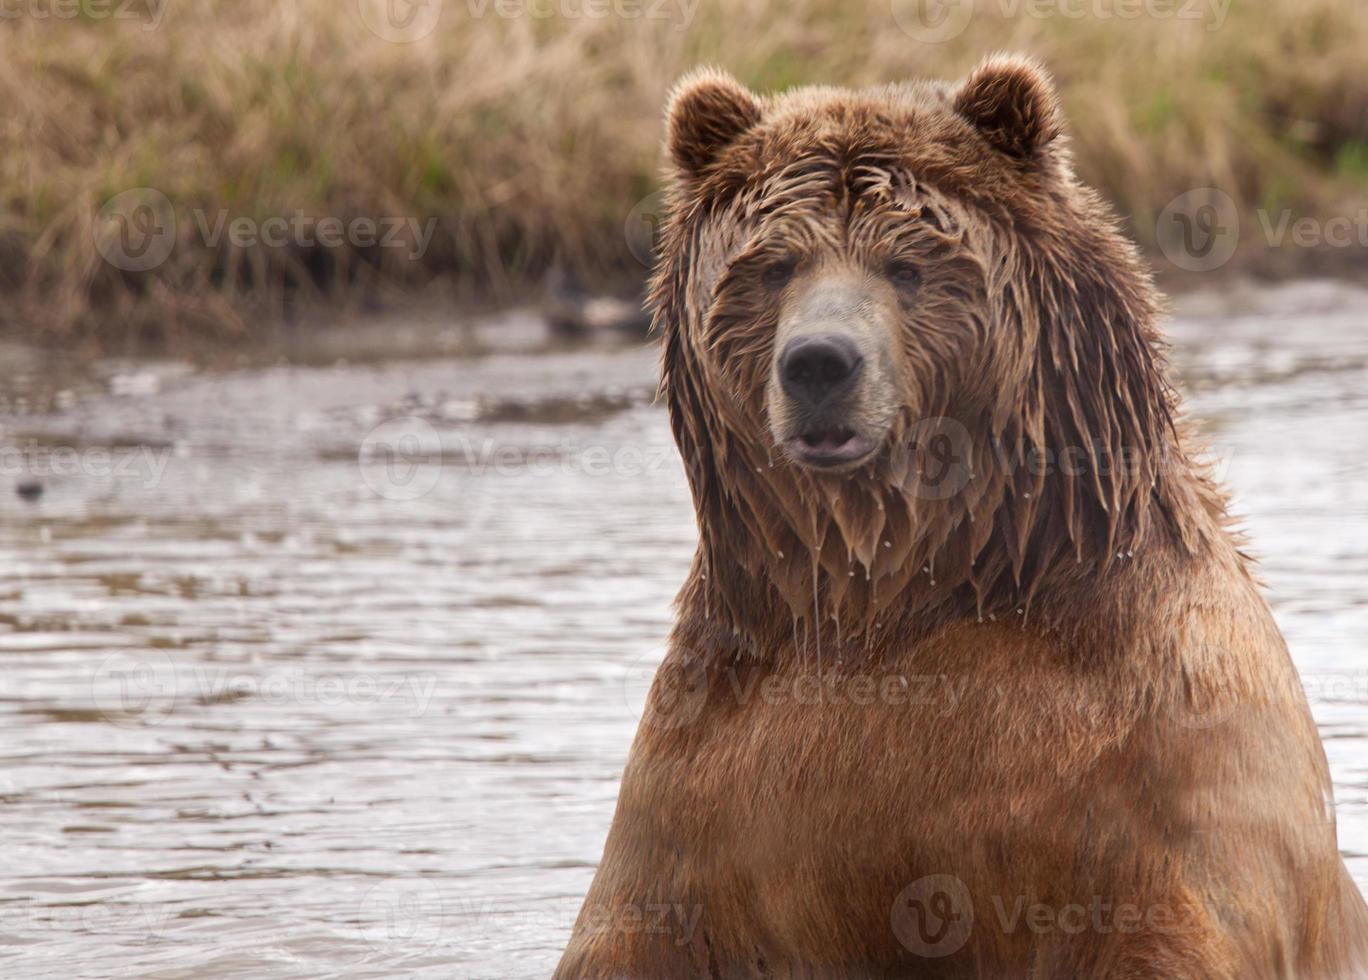 orso kodiak bagnato nell'acqua foto